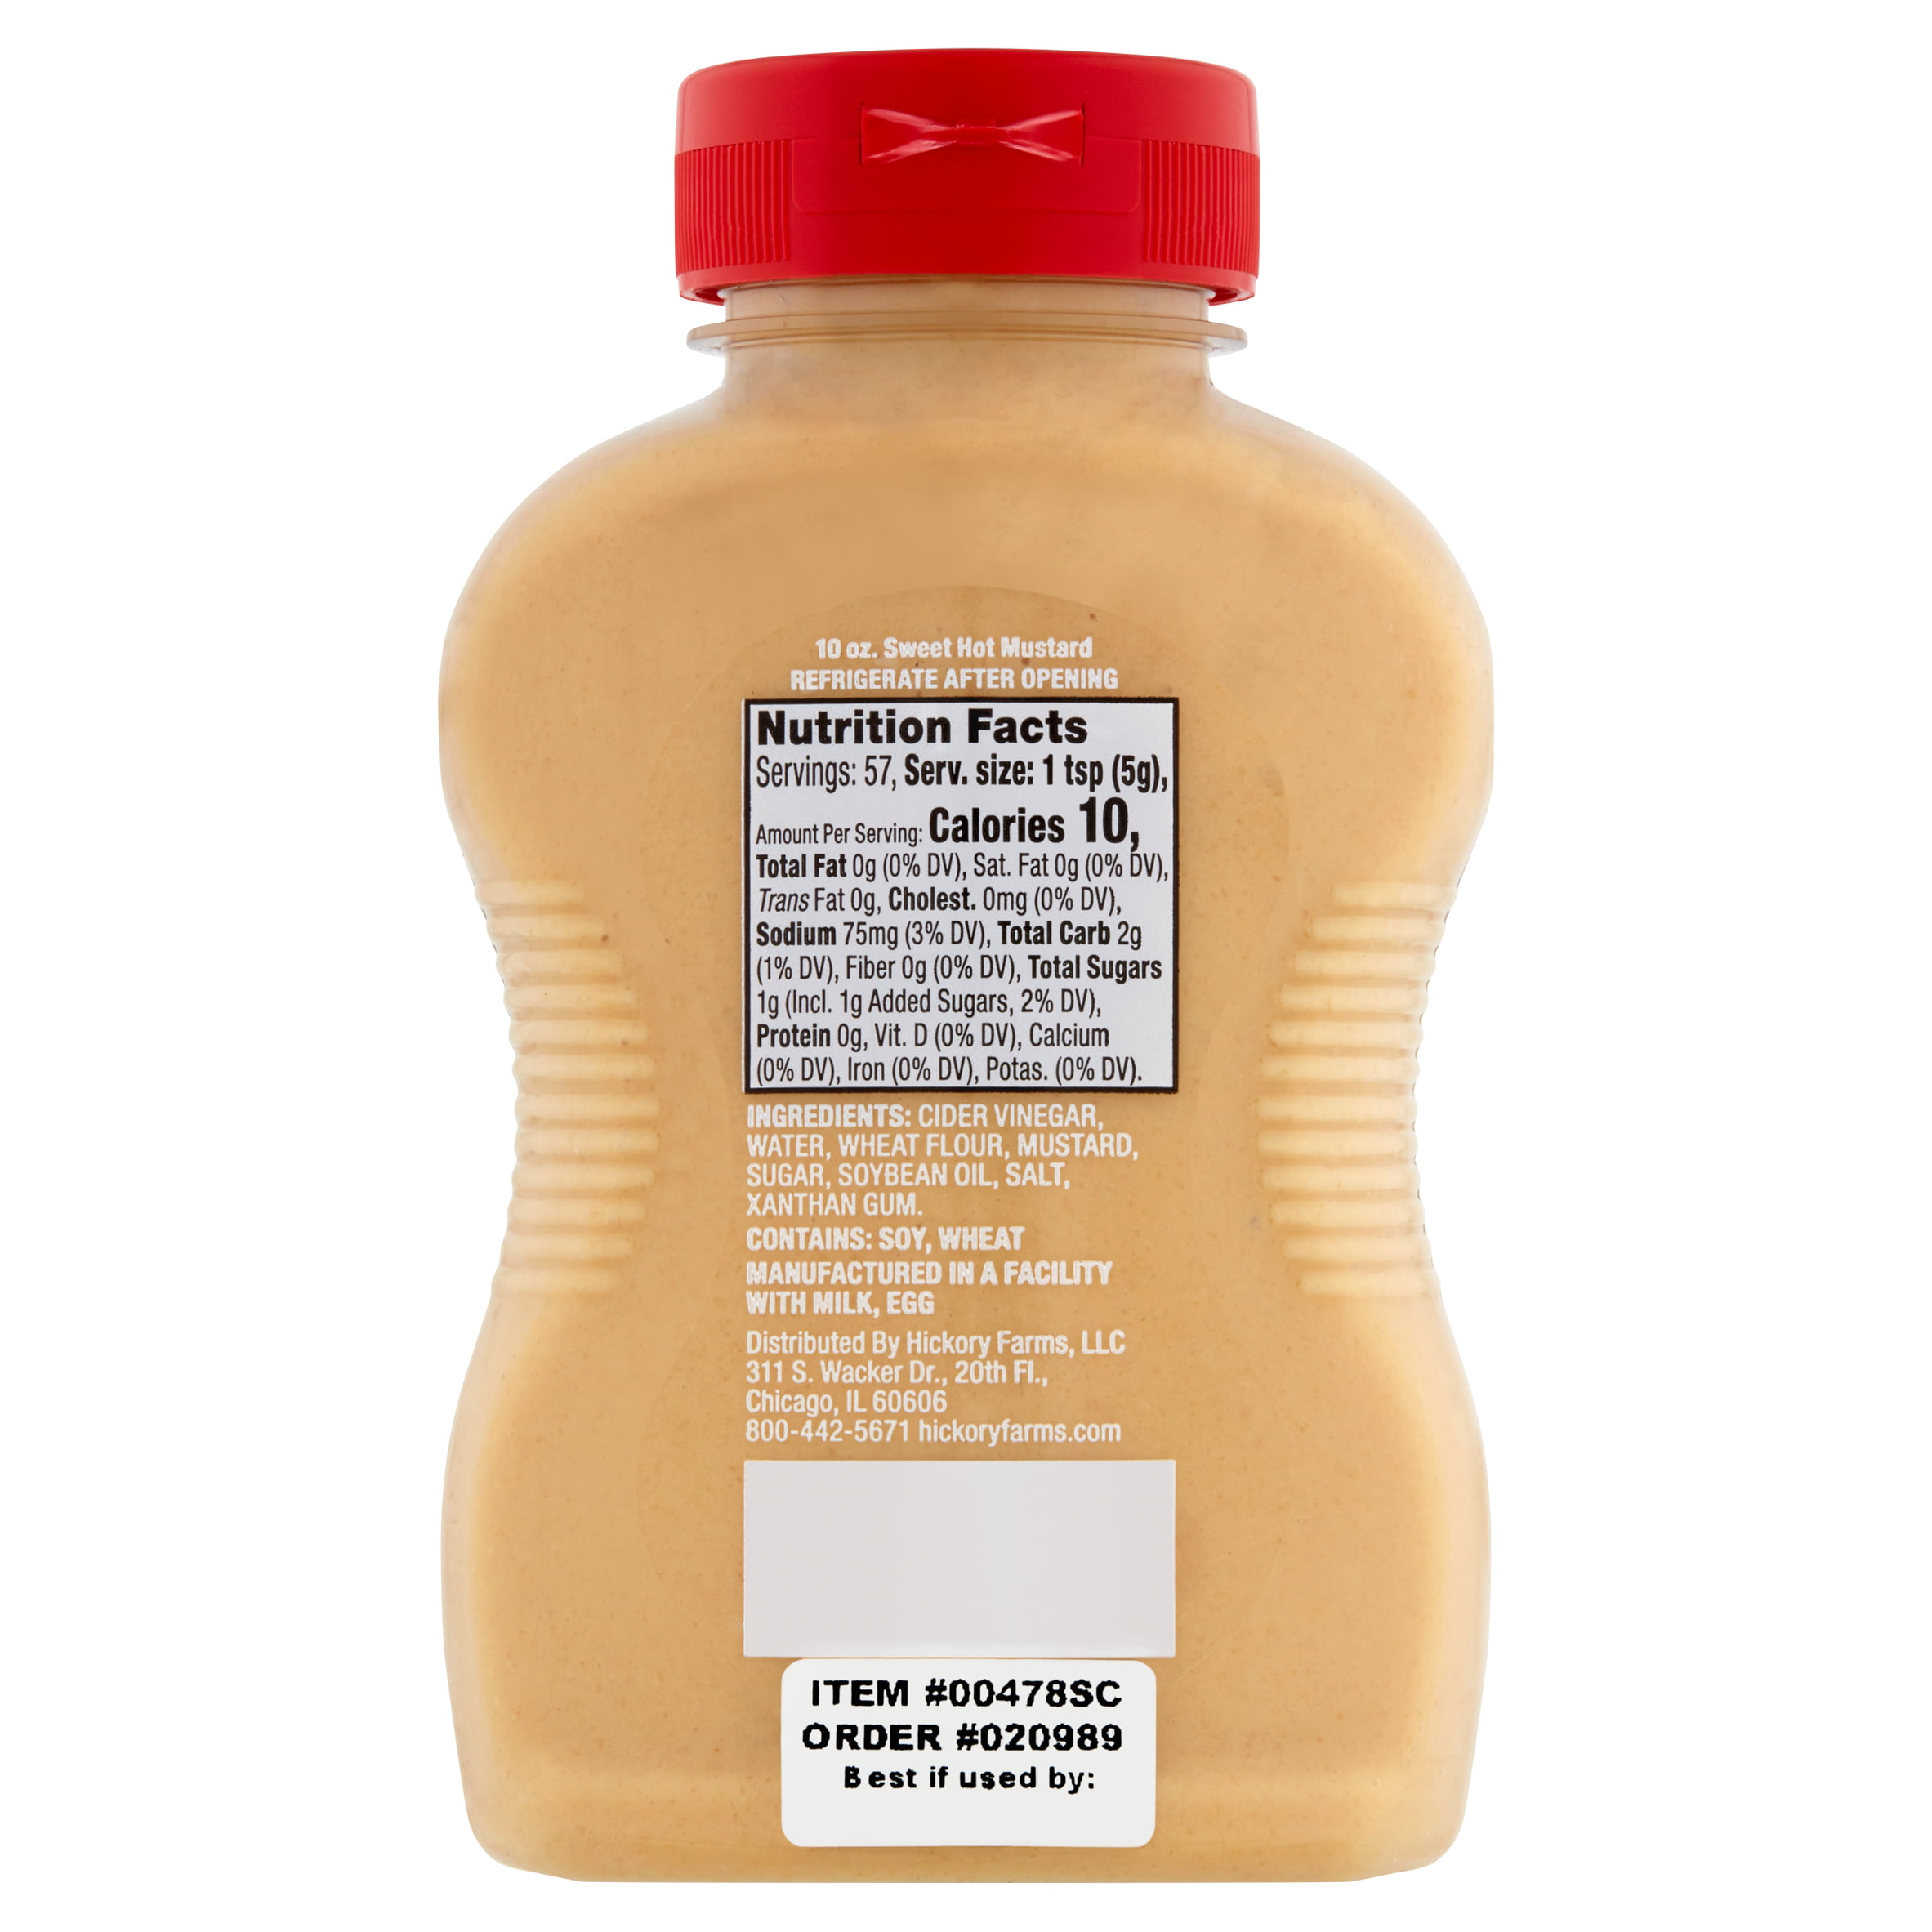 Sweet Hot Mustard - 5.00 USD | Hickory Farms